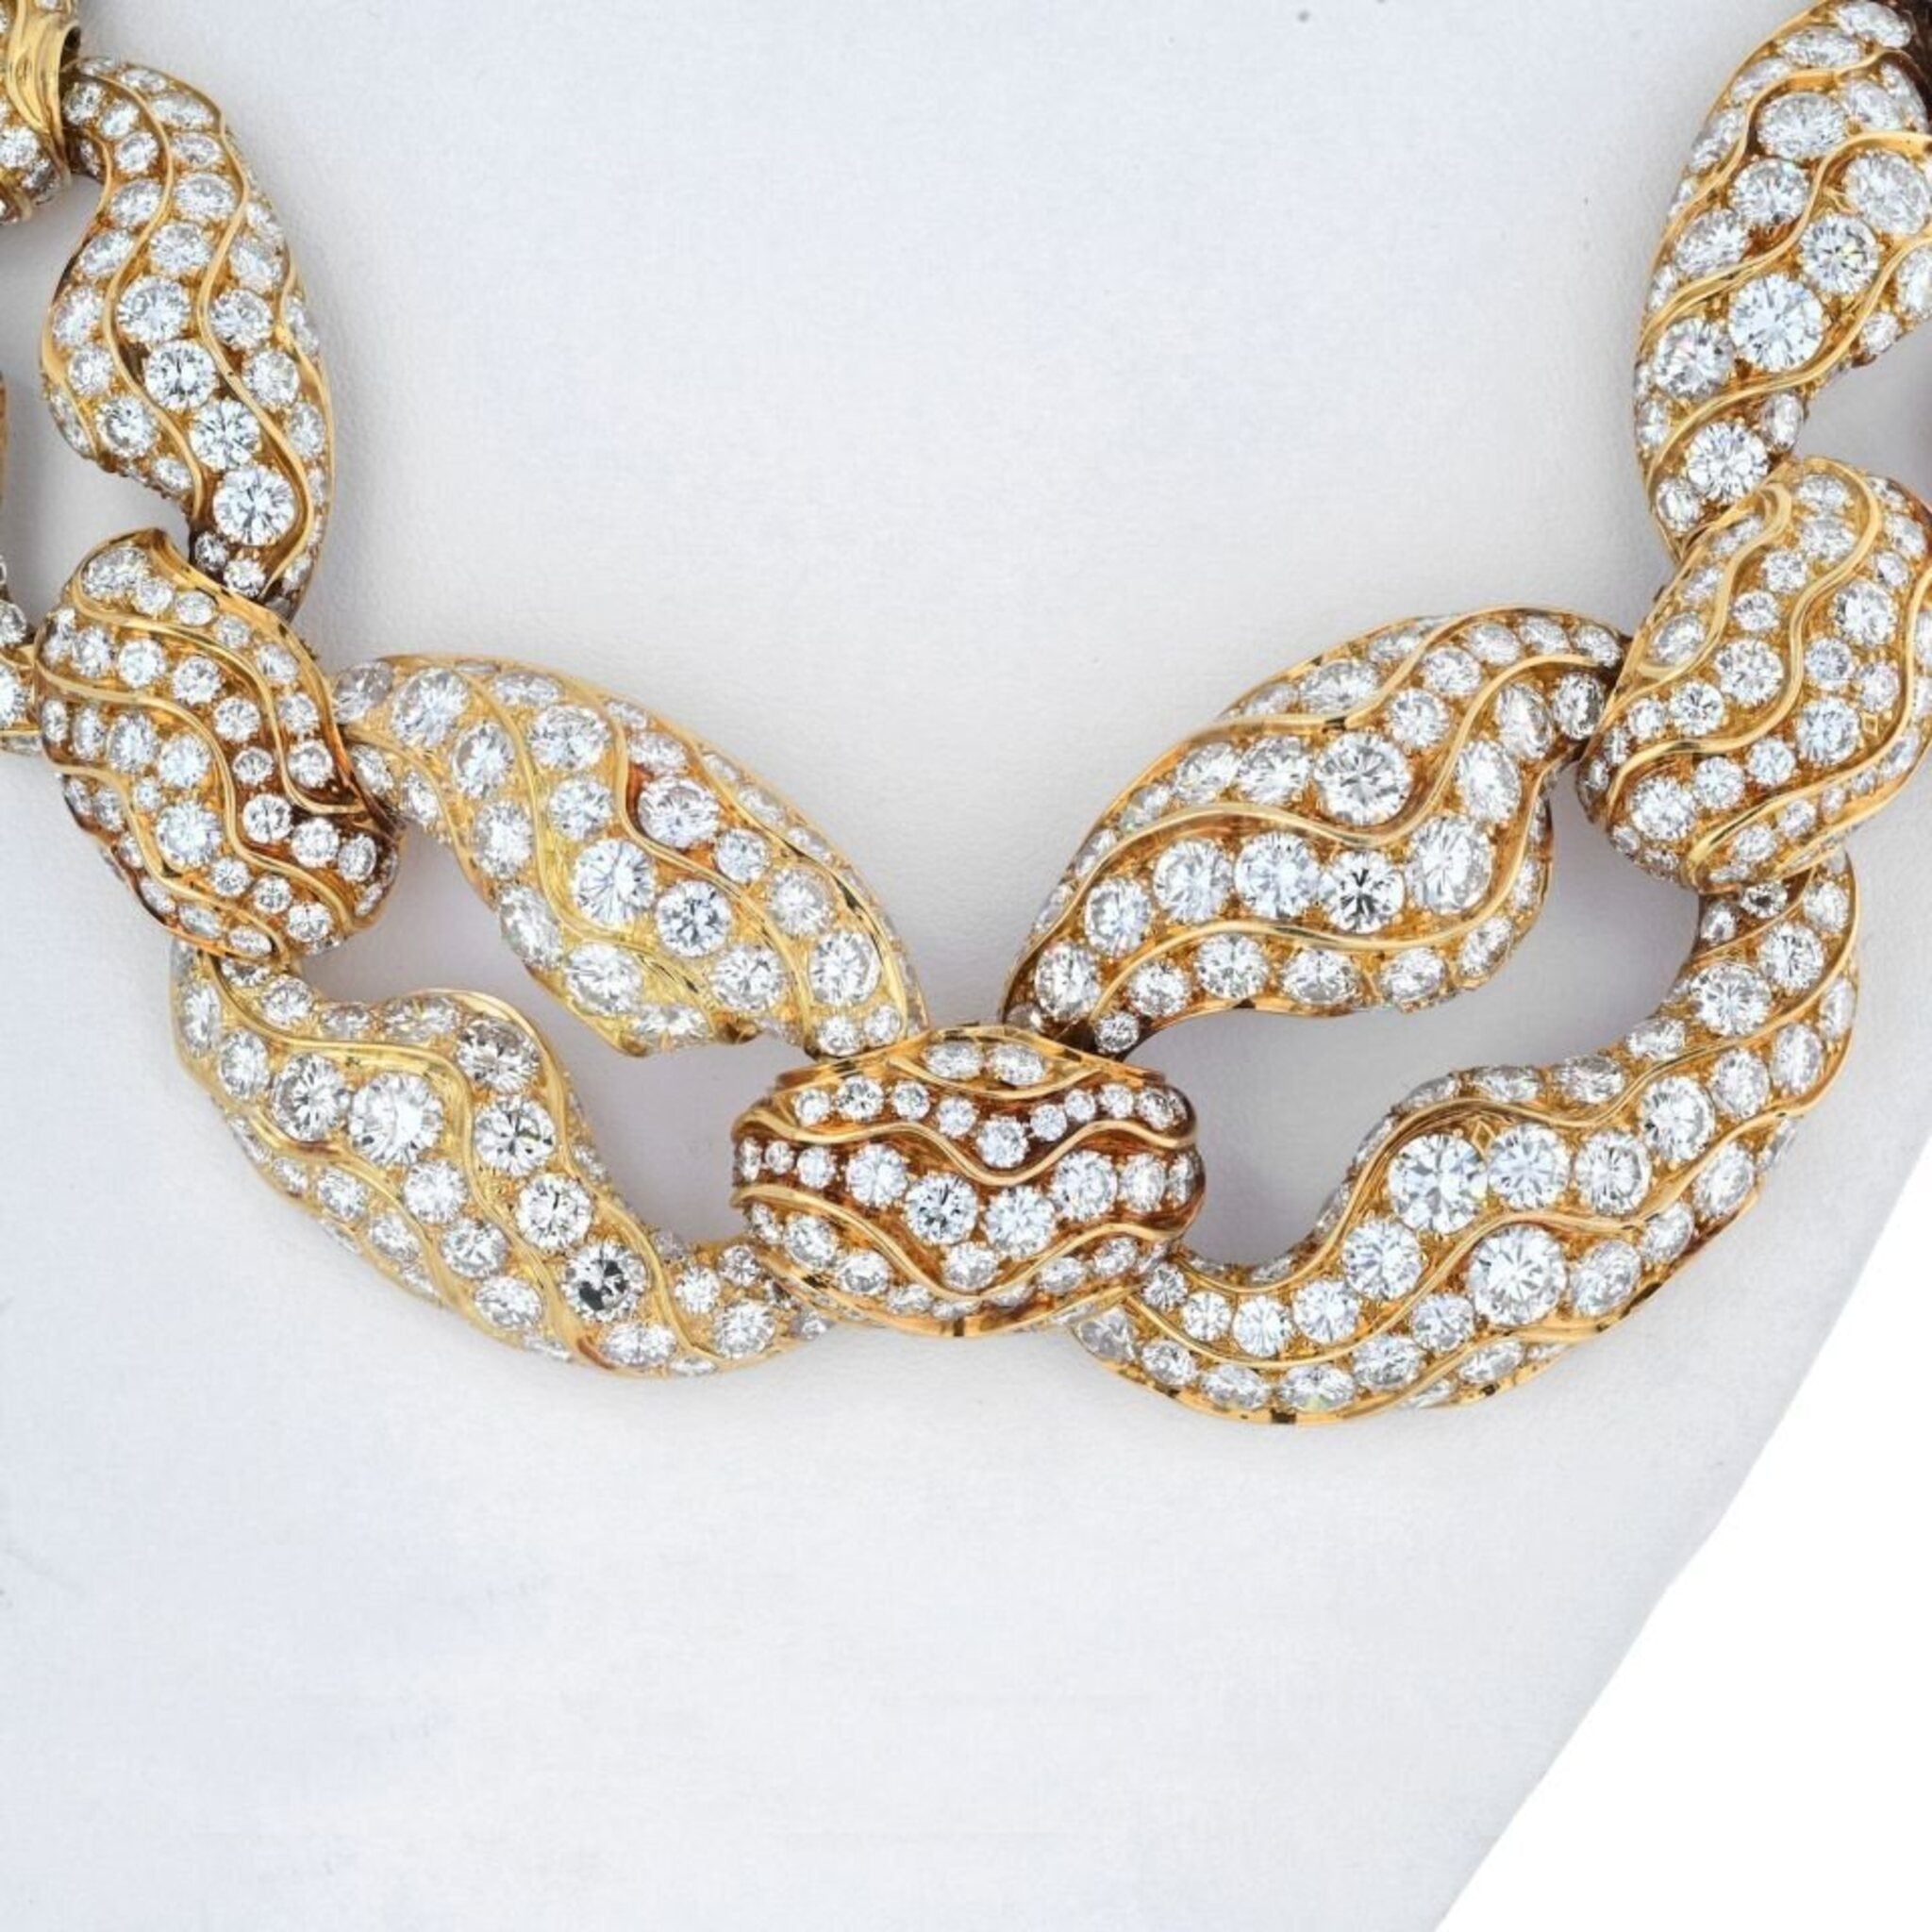 Circa 1960's 18K Yellow Gold 250 Carat Diamond Link Necklace